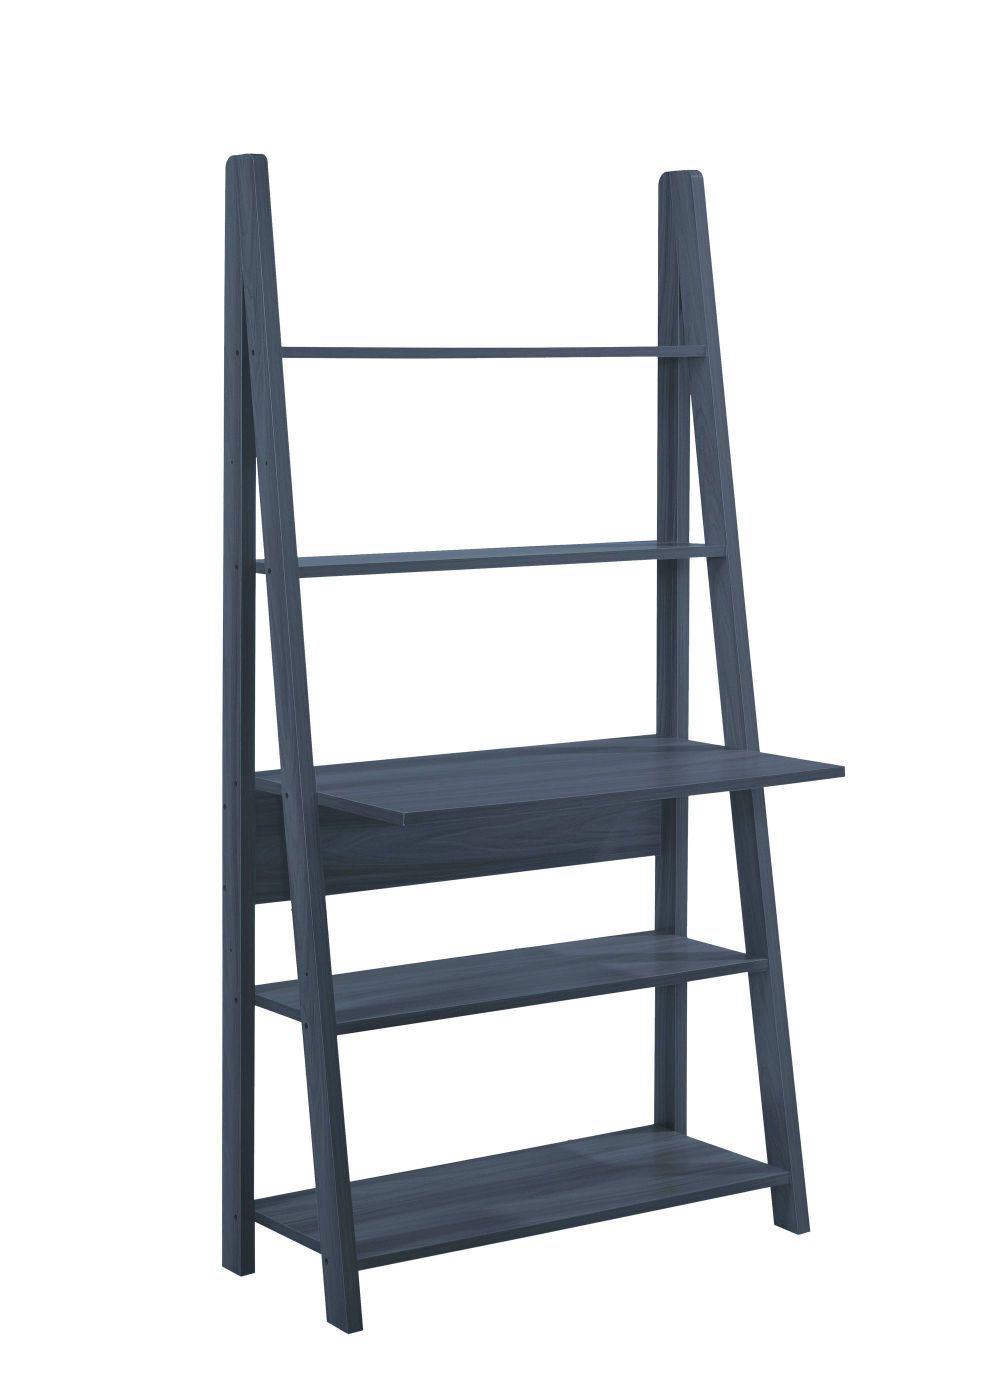 Turan Ladder Computer Desk Black | Ladder Desk, Ladder Bookcase, Ladder Regarding 2 Shelf Black Ladder Desks (View 11 of 15)